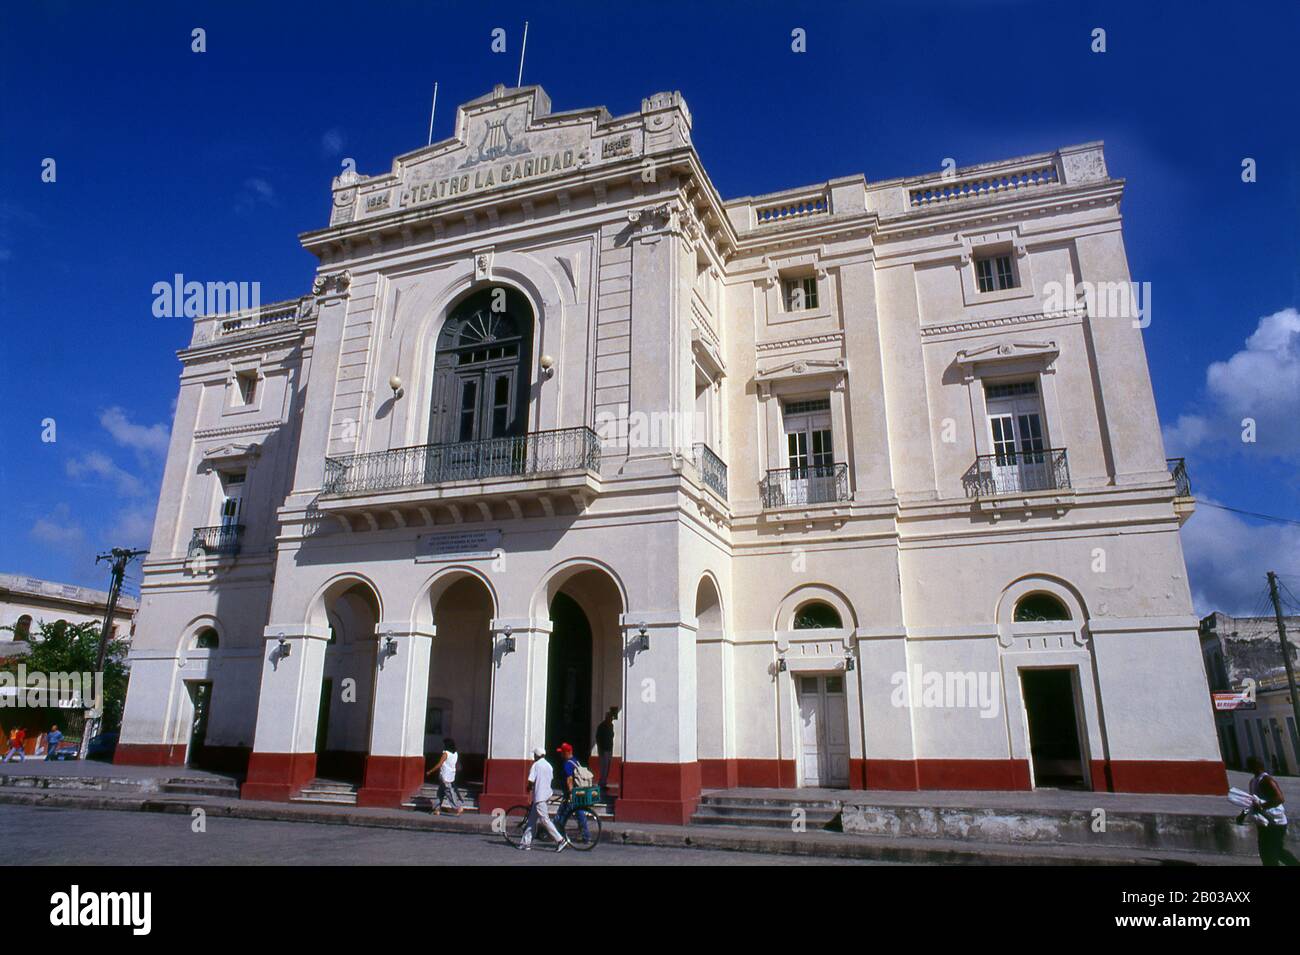 Teatro de La Caridad was built in 1885 and is one of The Eight Grand Theatres of the Cuban Colonial era along with Teatro de la Marina in Santiago de Cuba (1823), Milanes in Pinar del Río (1838), Tacón in Havana (1838), Brunet in Trinidad (1840), Principal in Camagüey (1850), Sauto in Matanzas (1863) and Terry in Cienfuegos (1890). Stock Photo